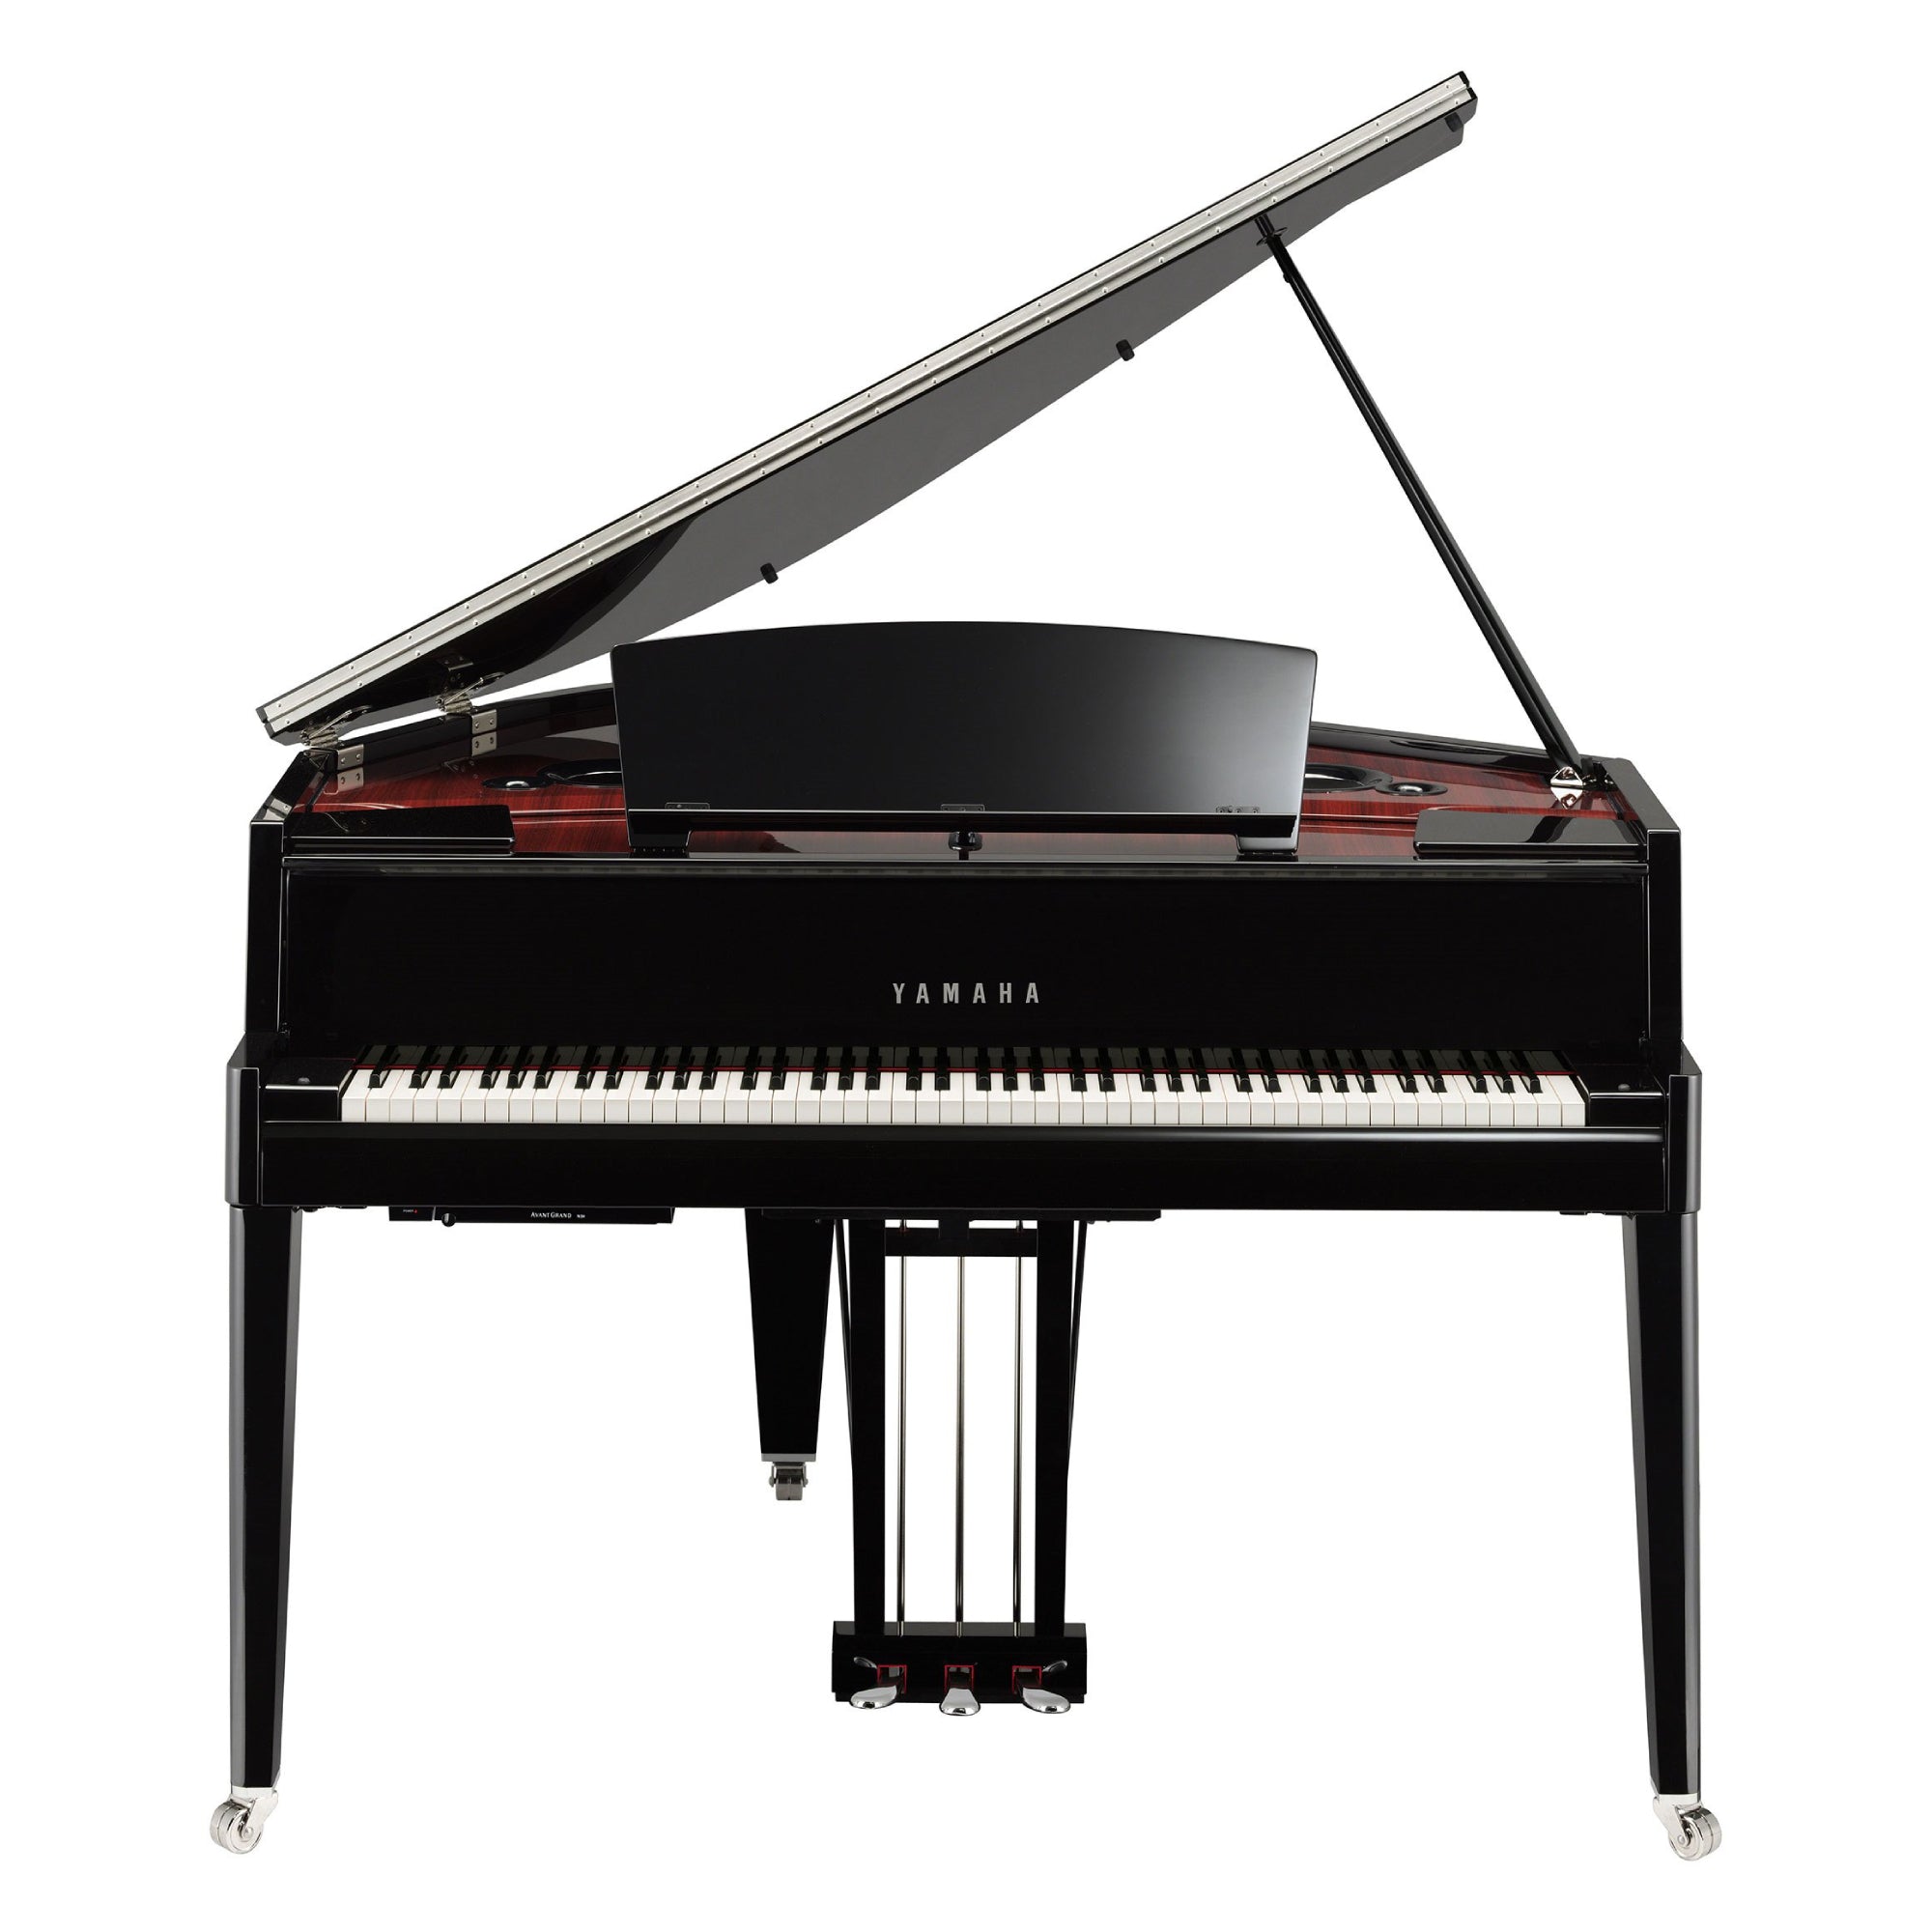 Đàn Piano Điện Yamaha N3X AvantGrand - Qua Sử Dụng